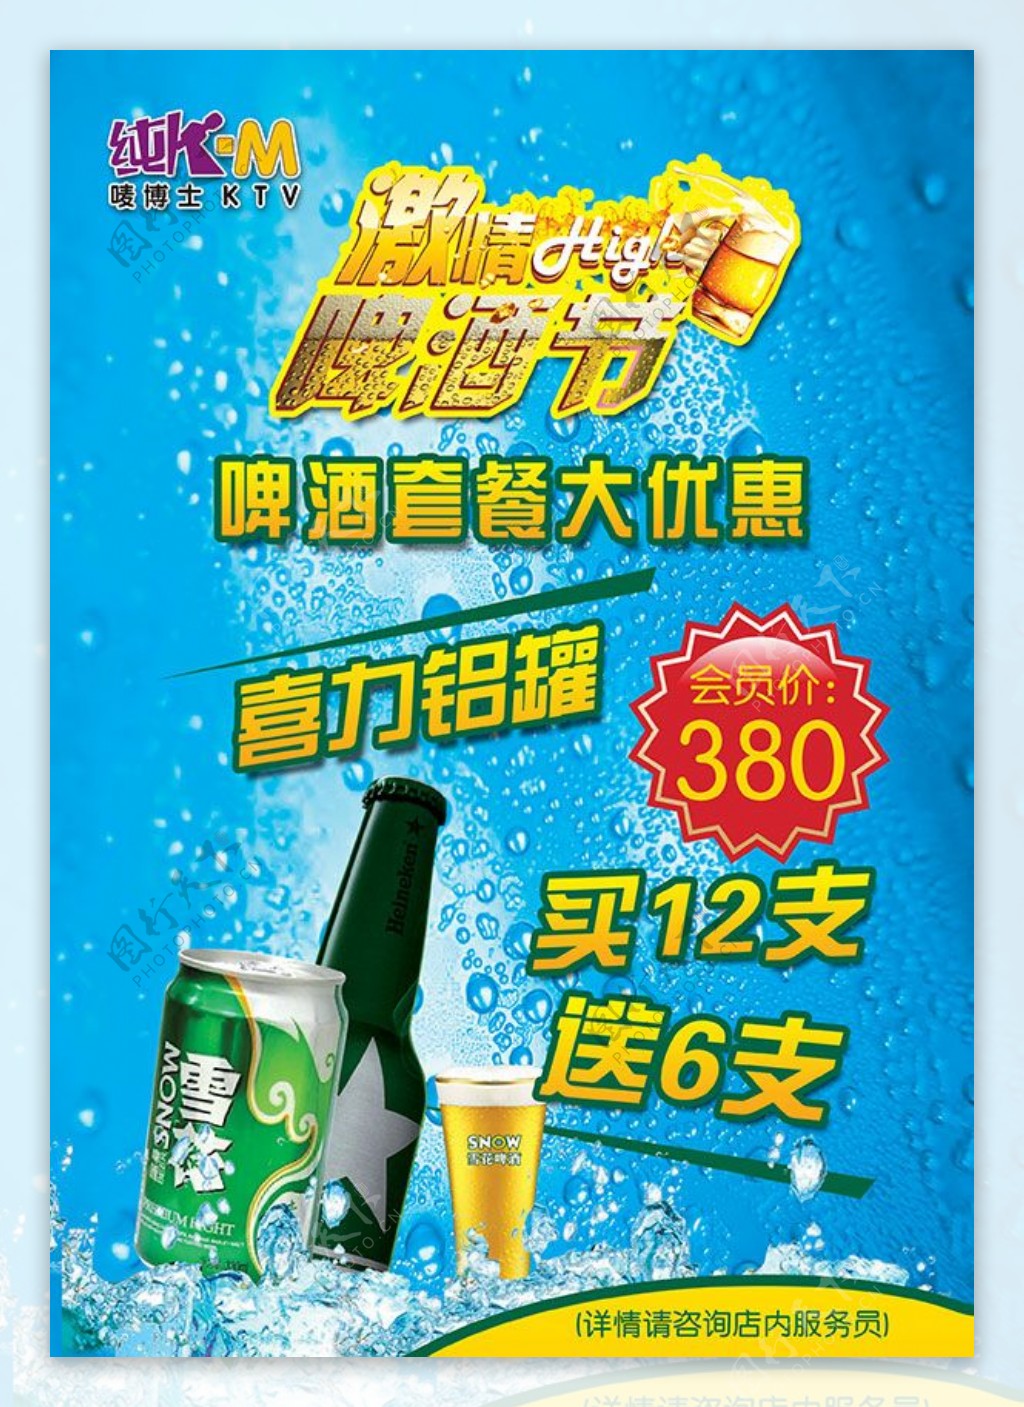 啤酒节促销海报PSD素材下载